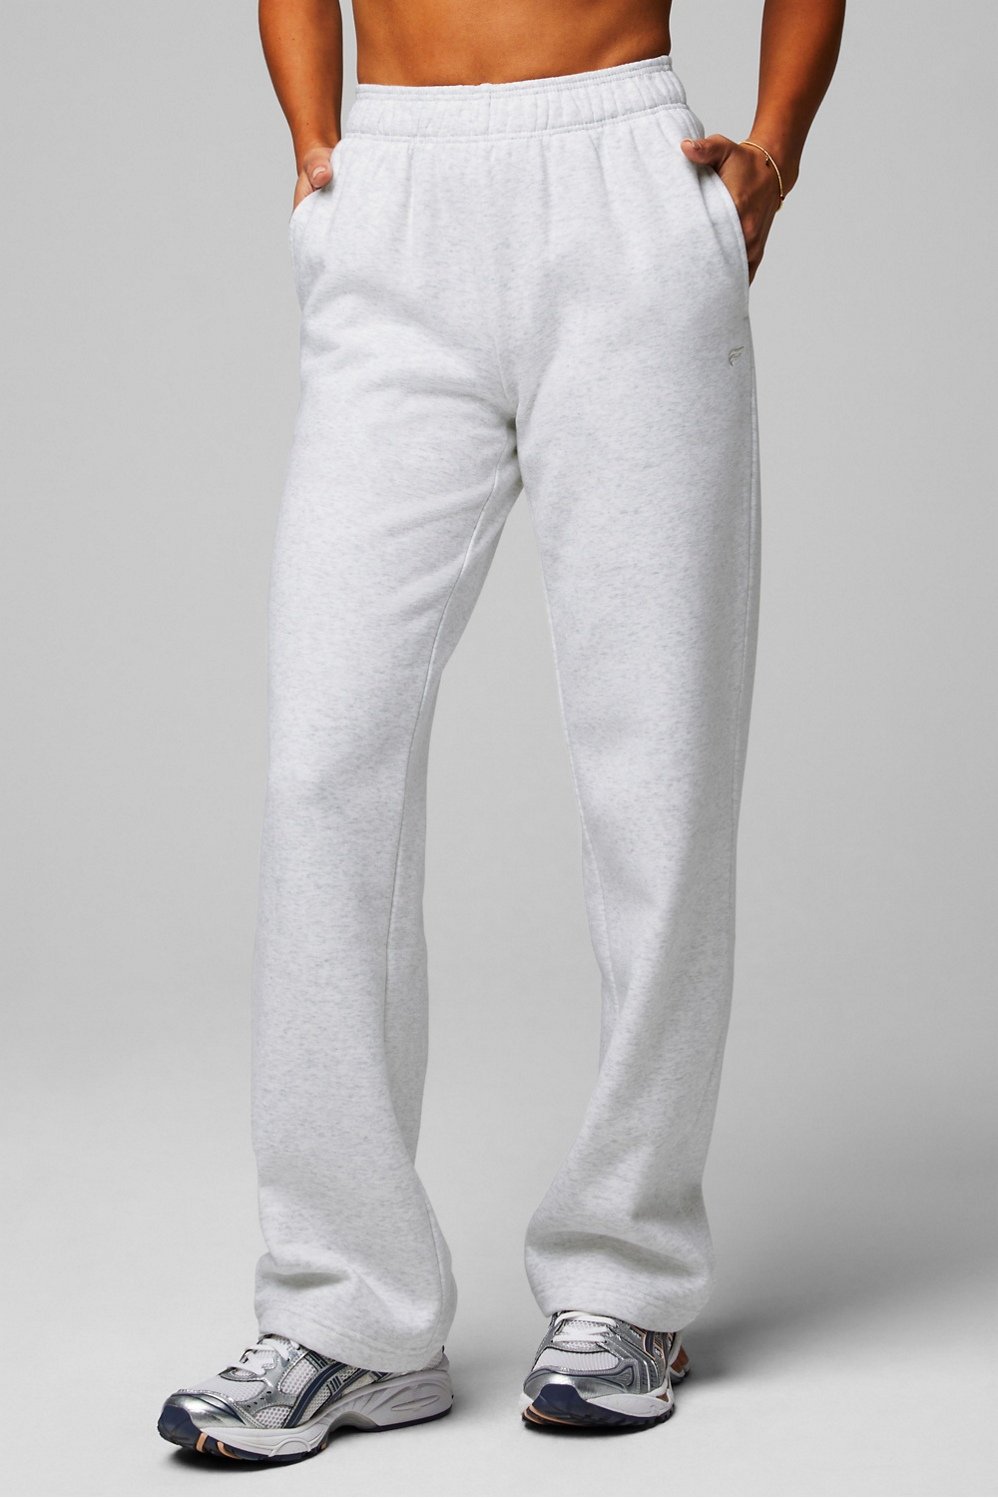 Buy Premium Fleece Wide-Leg Pants Online